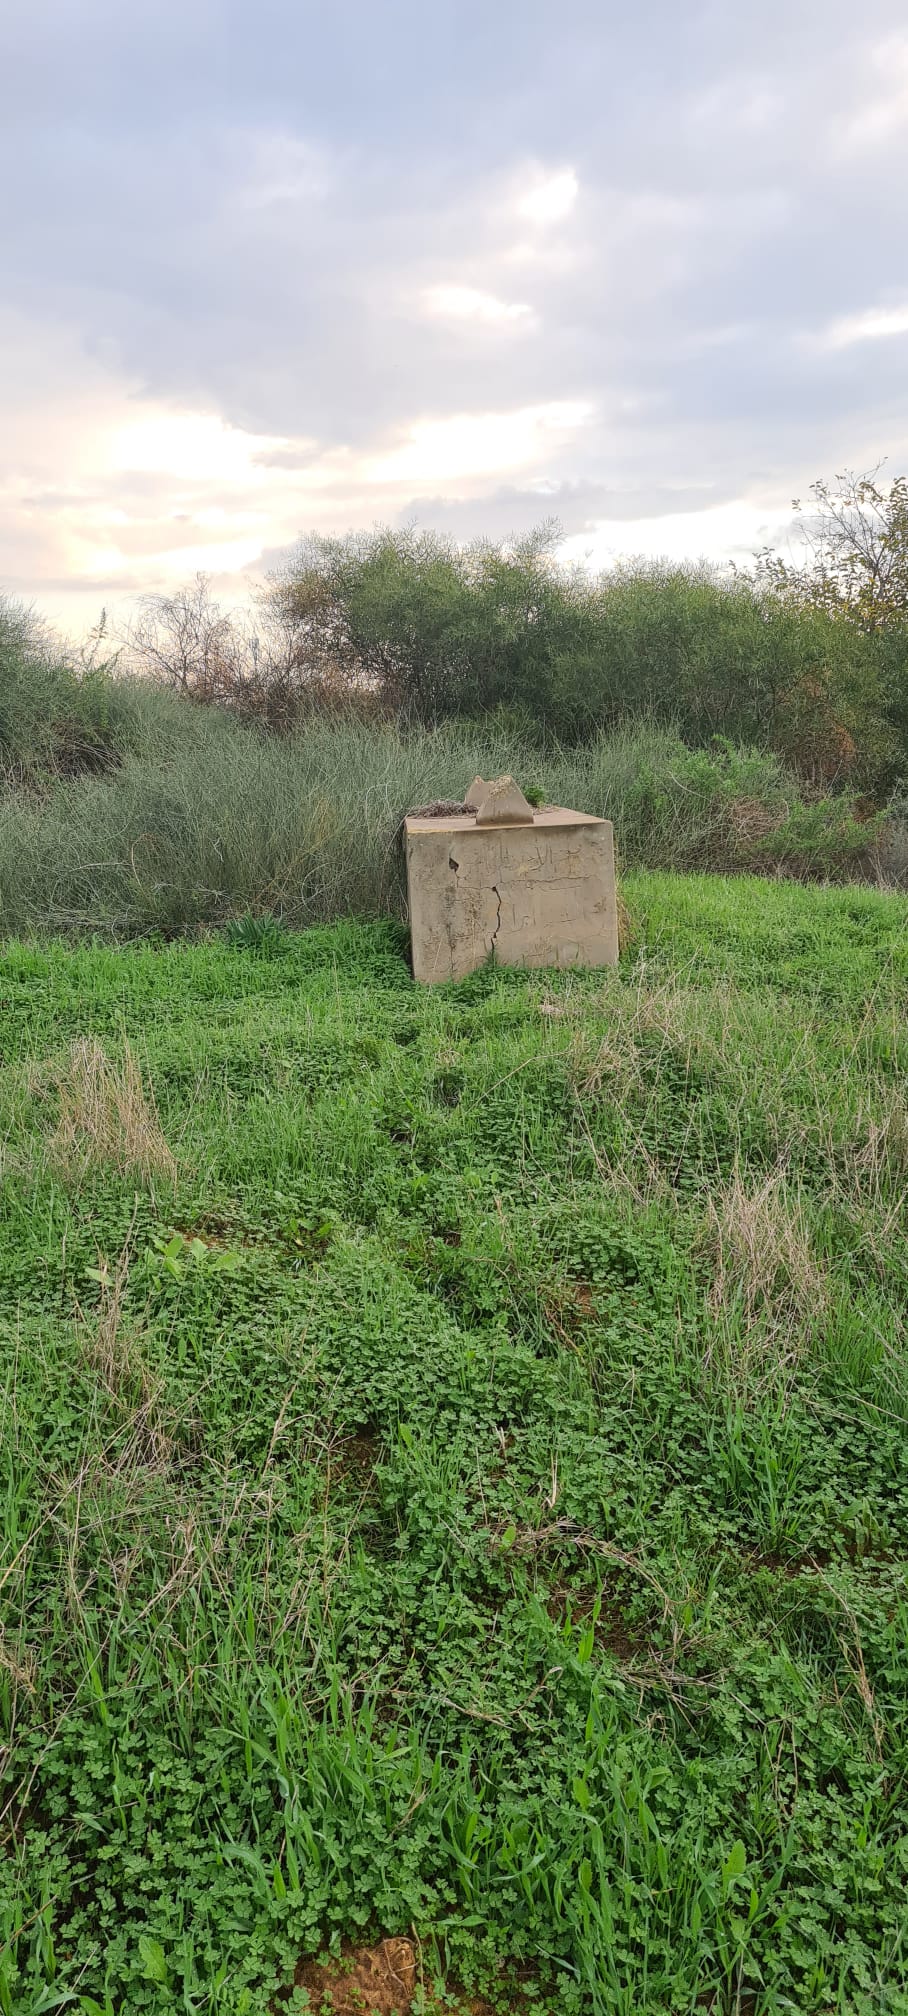 بلدية بئر يعكوف تنبش القبور في مقبرة صرفند الخراب قضاء الرملة